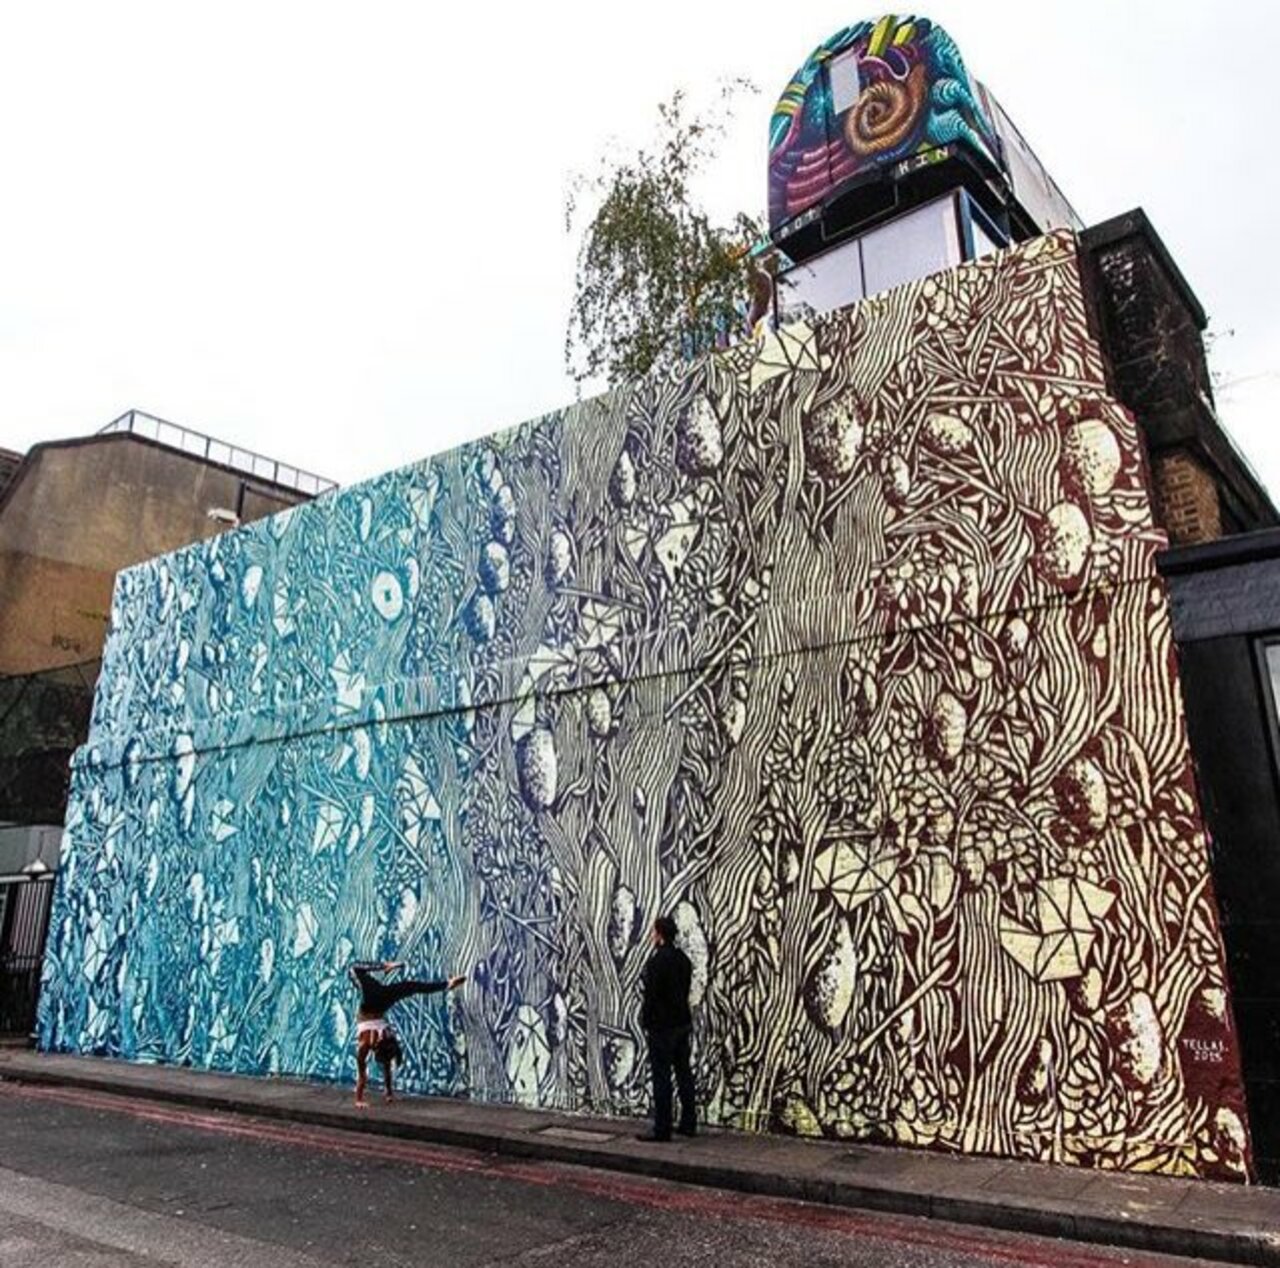 New Street Art by Tellas in Shoreditch London 

#art #graffiti #mural #streetart https://t.co/tEg0r0F2y1